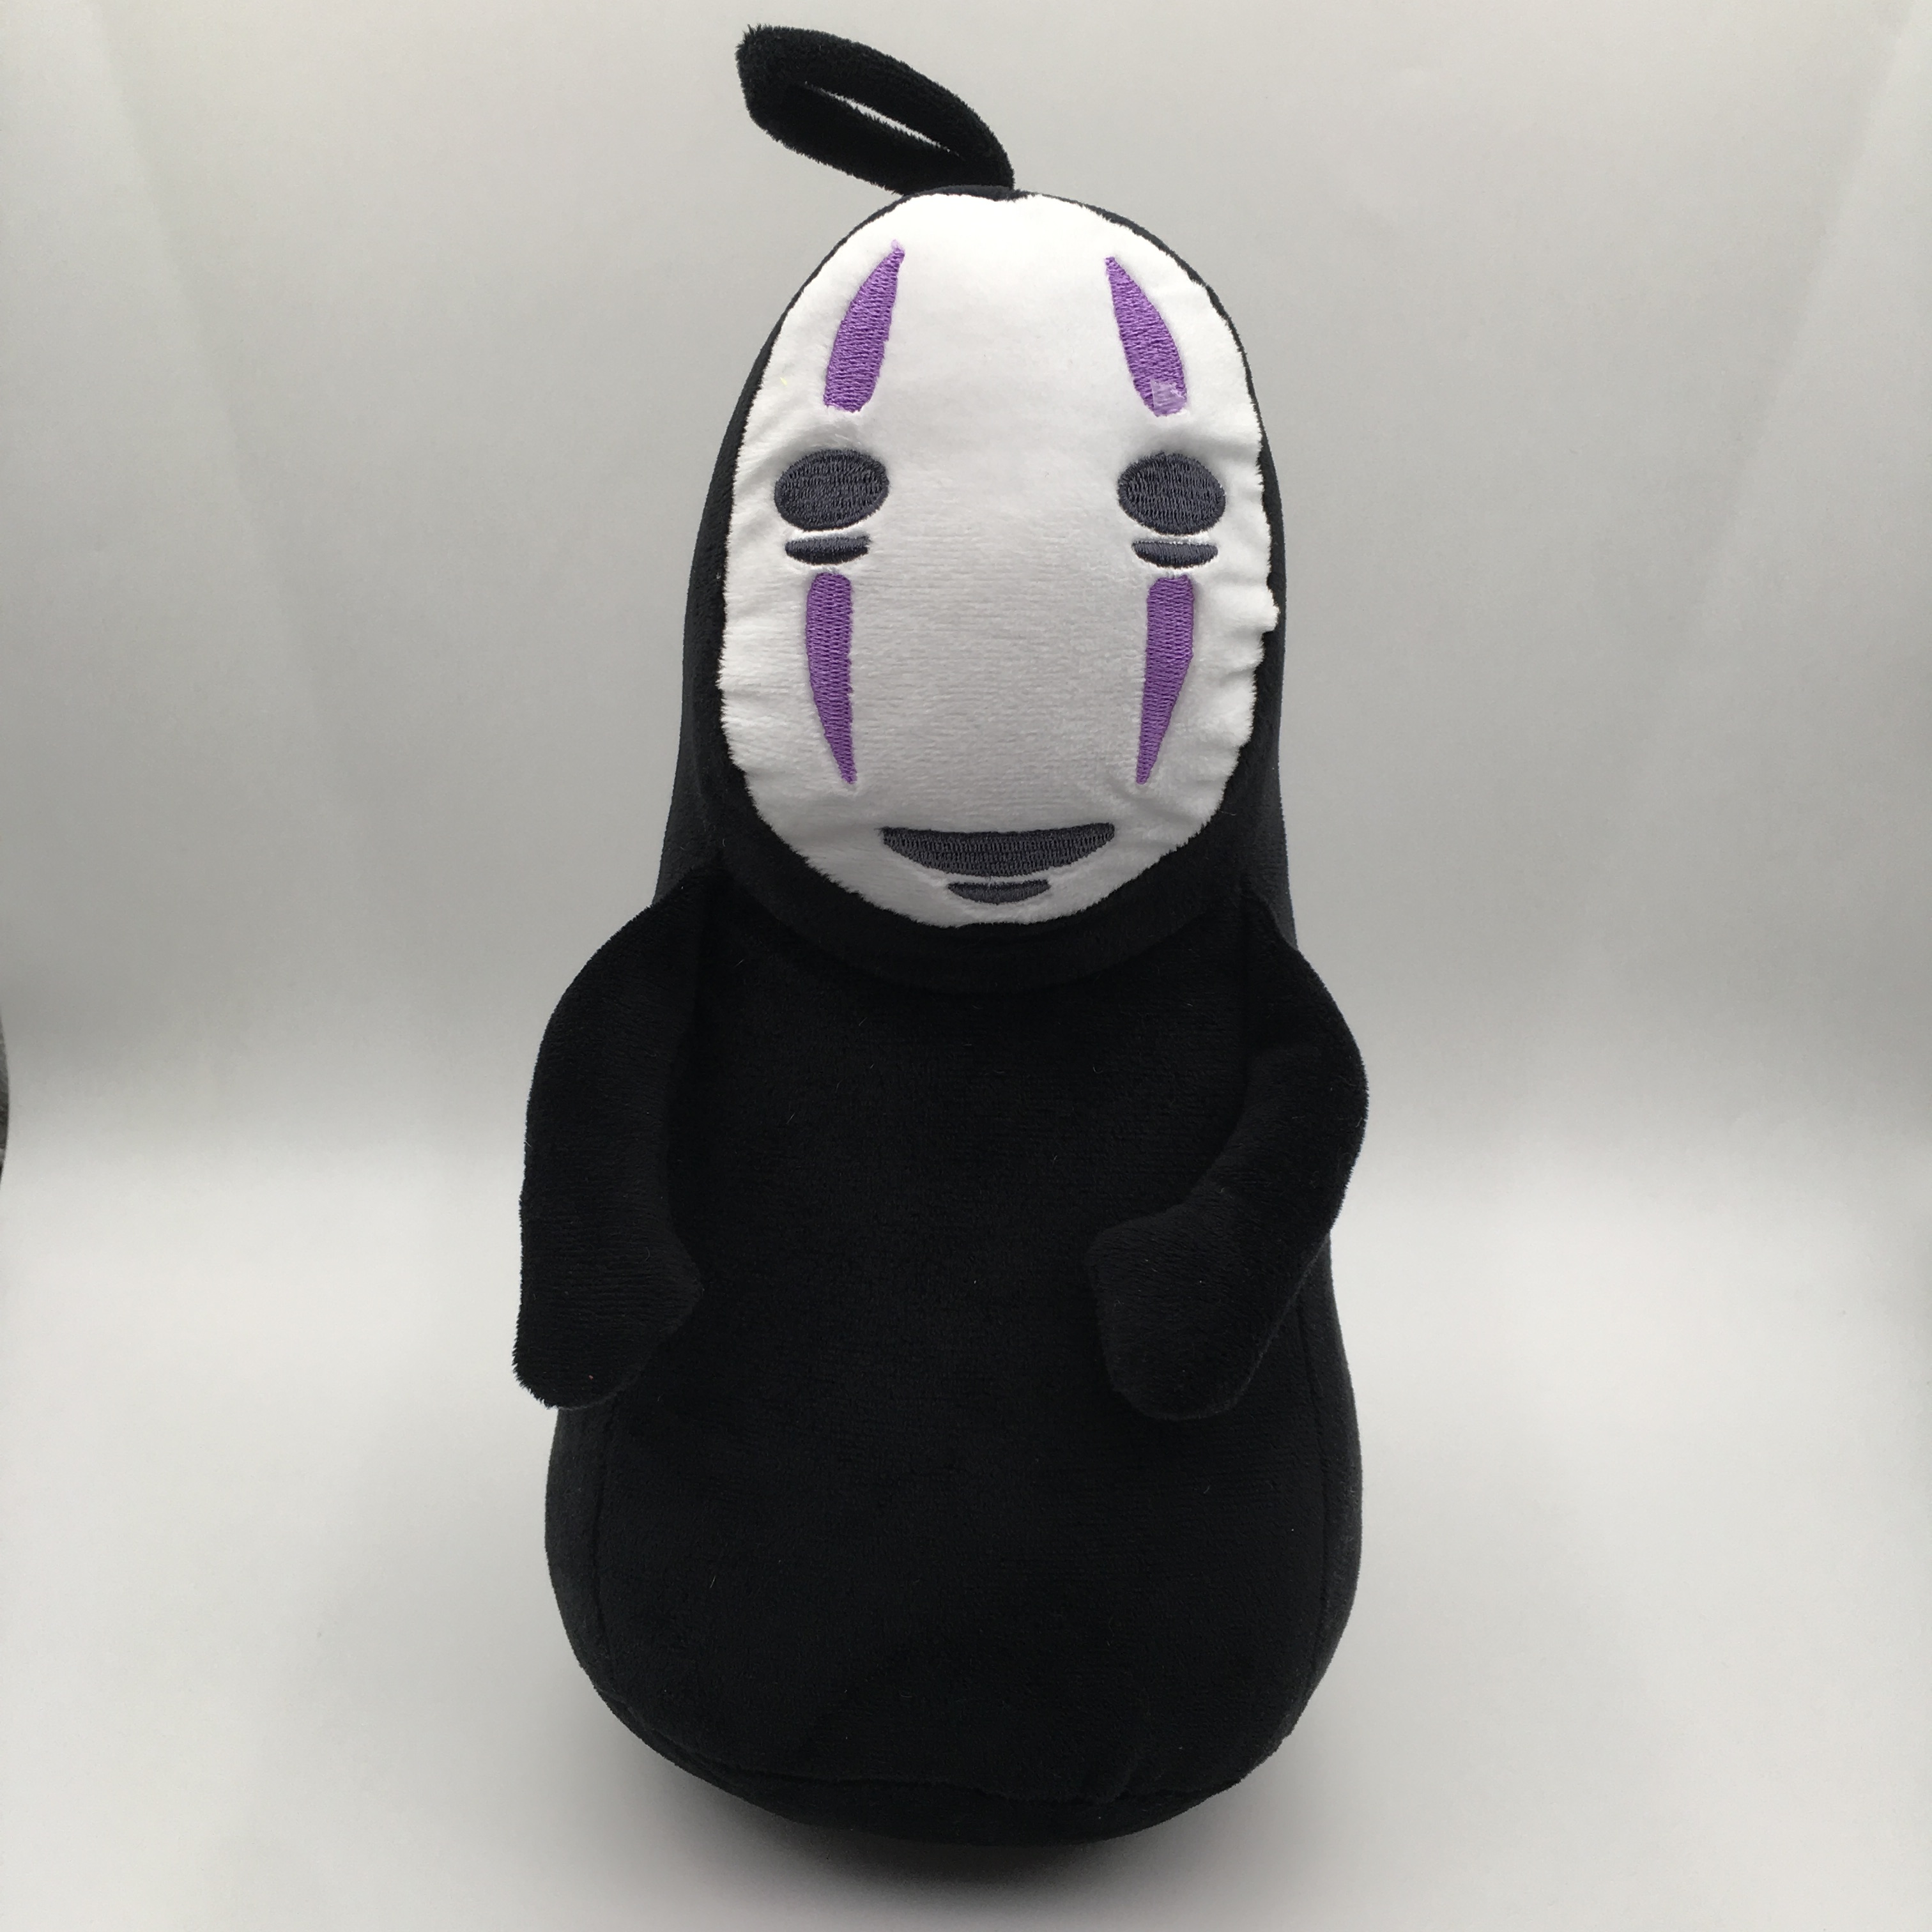 Spirited Away anime plush toy